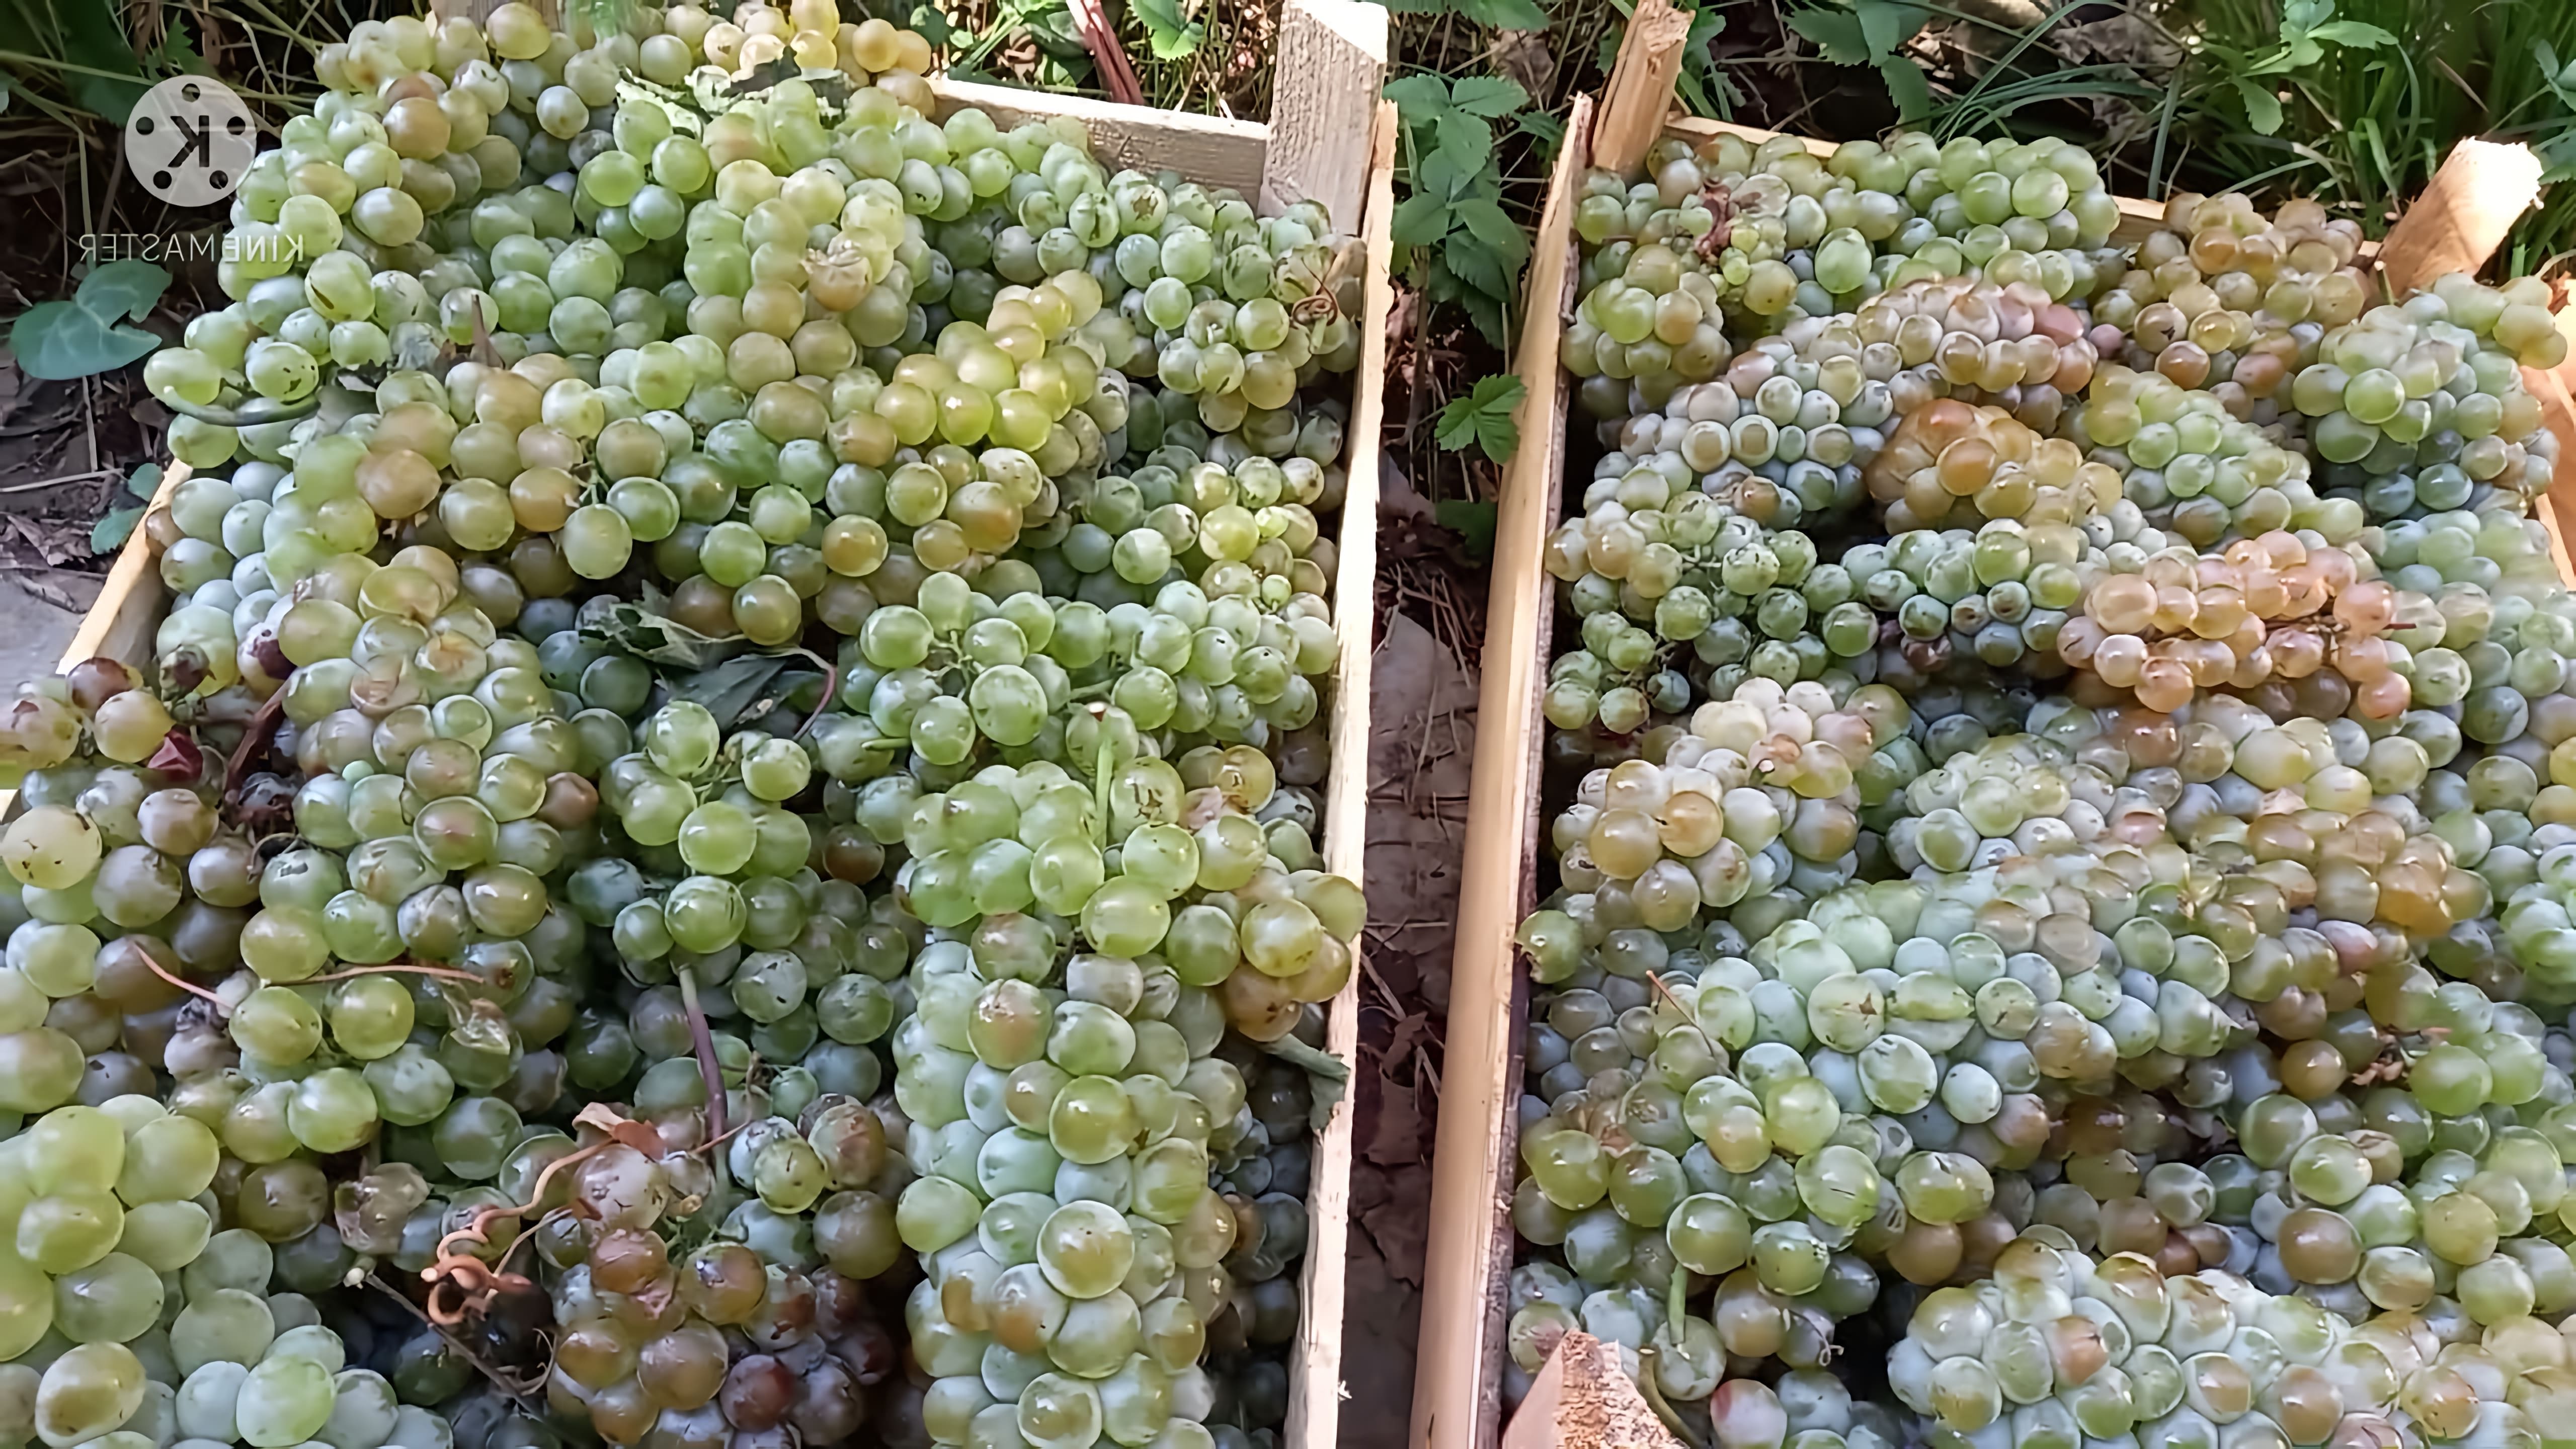 В данном видео демонстрируется процесс изготовления белого вина из винограда сорта Ркацители